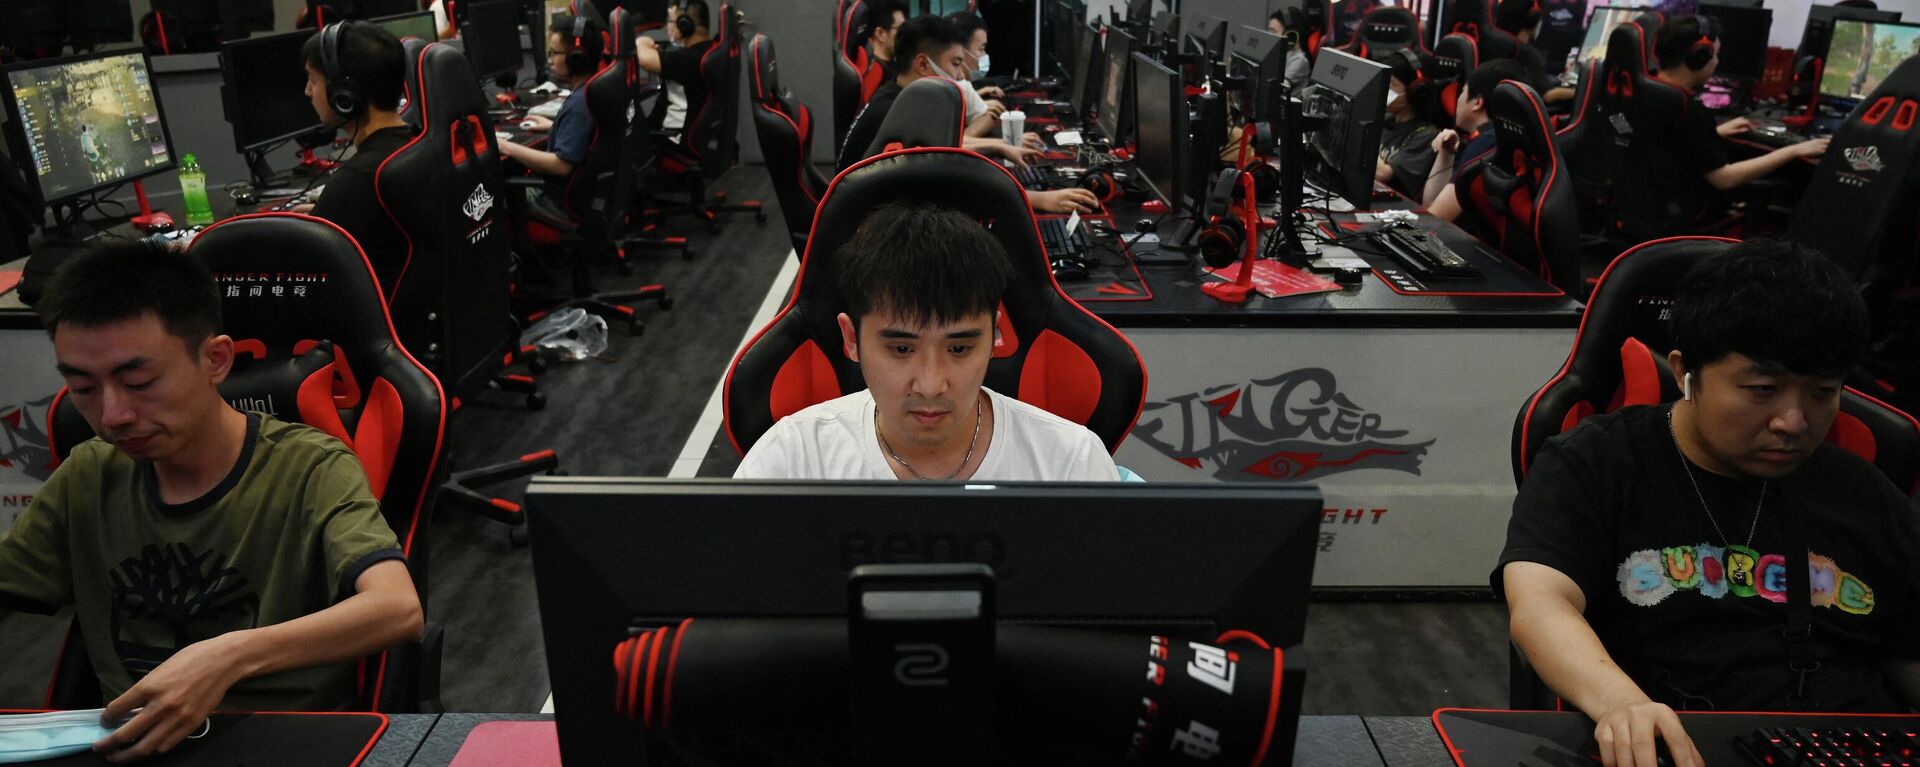 People play computer games at an internet cafe in Beijing on September 10, 2021 (Photo by GREG BAKER / AFP) - Sputnik International, 1920, 20.08.2023